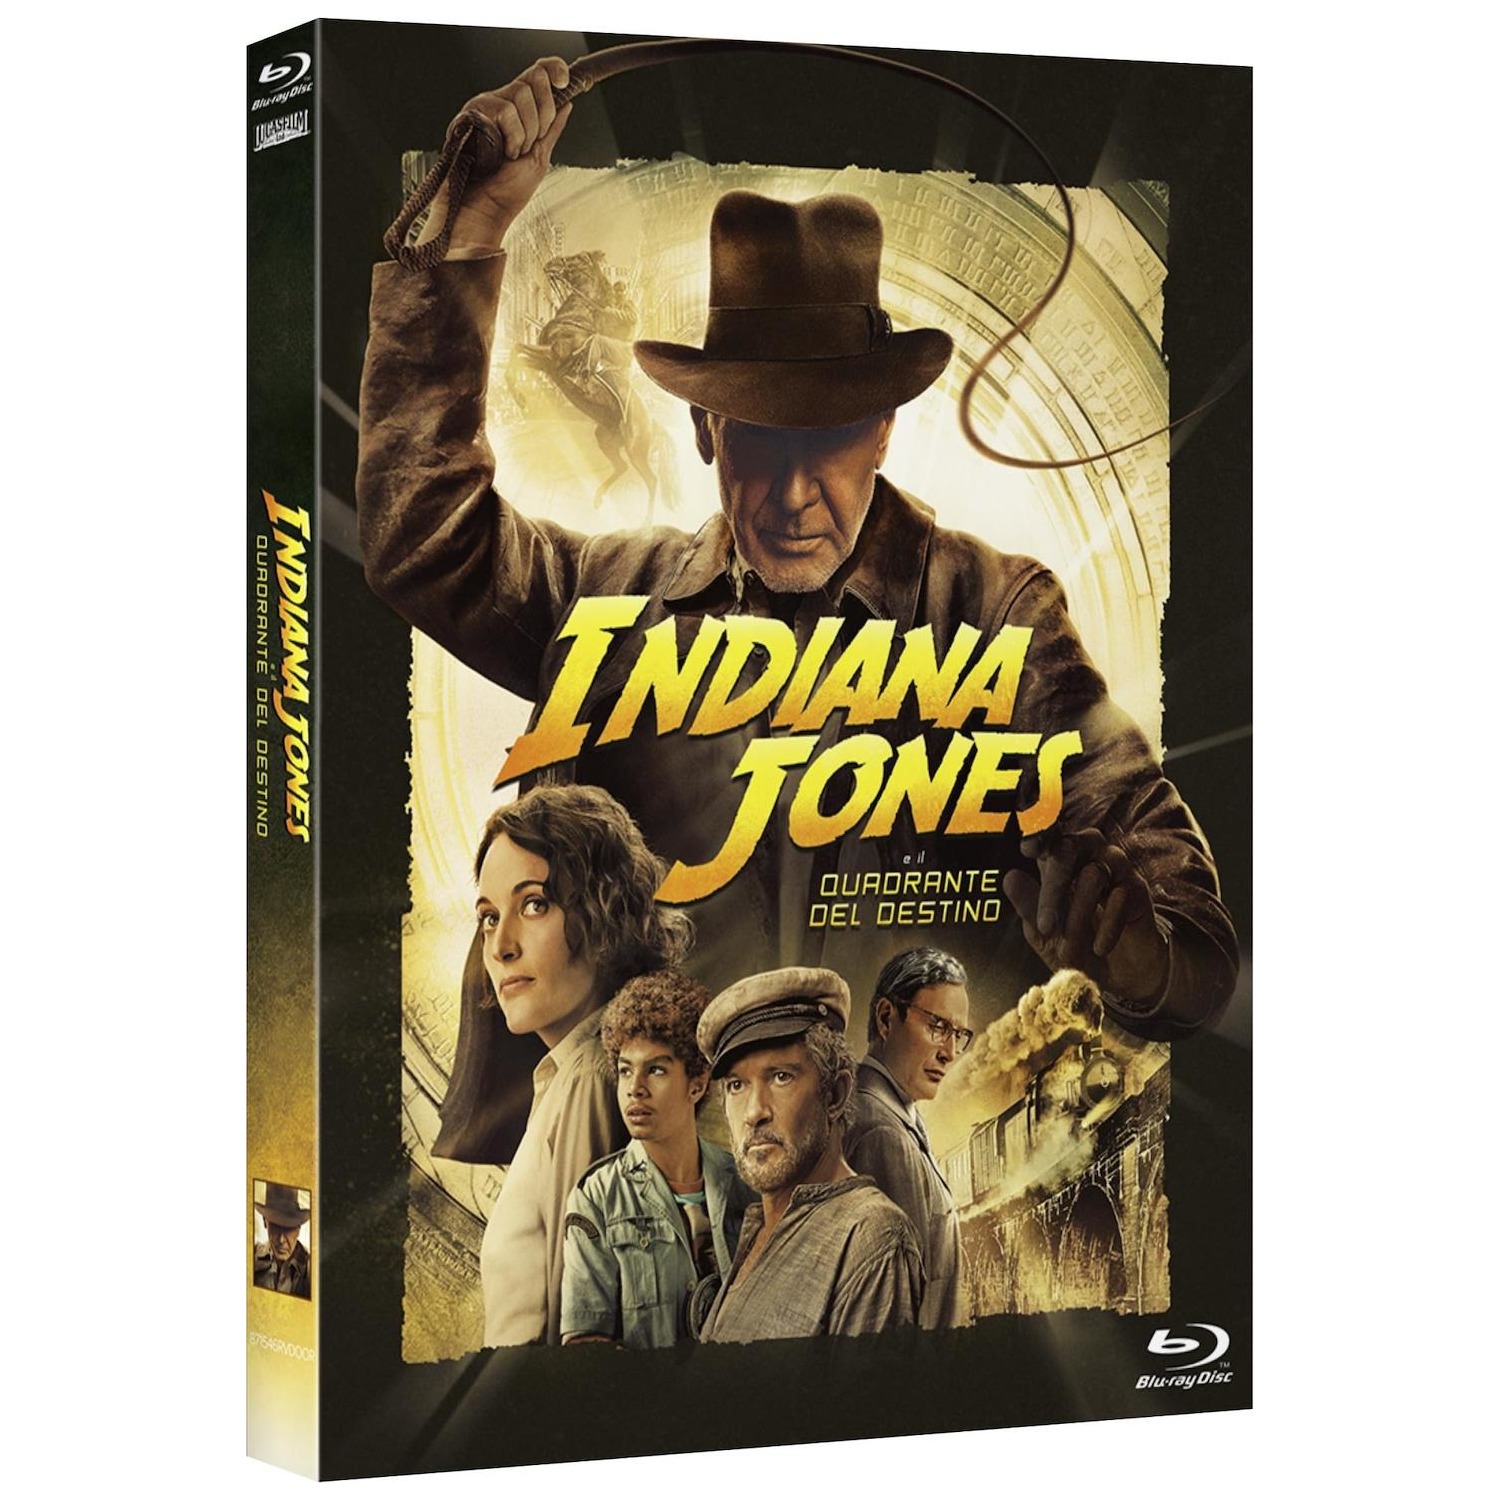 Bluray 4k Indiana Jones e il Quadrante del Destino - DIMOStore